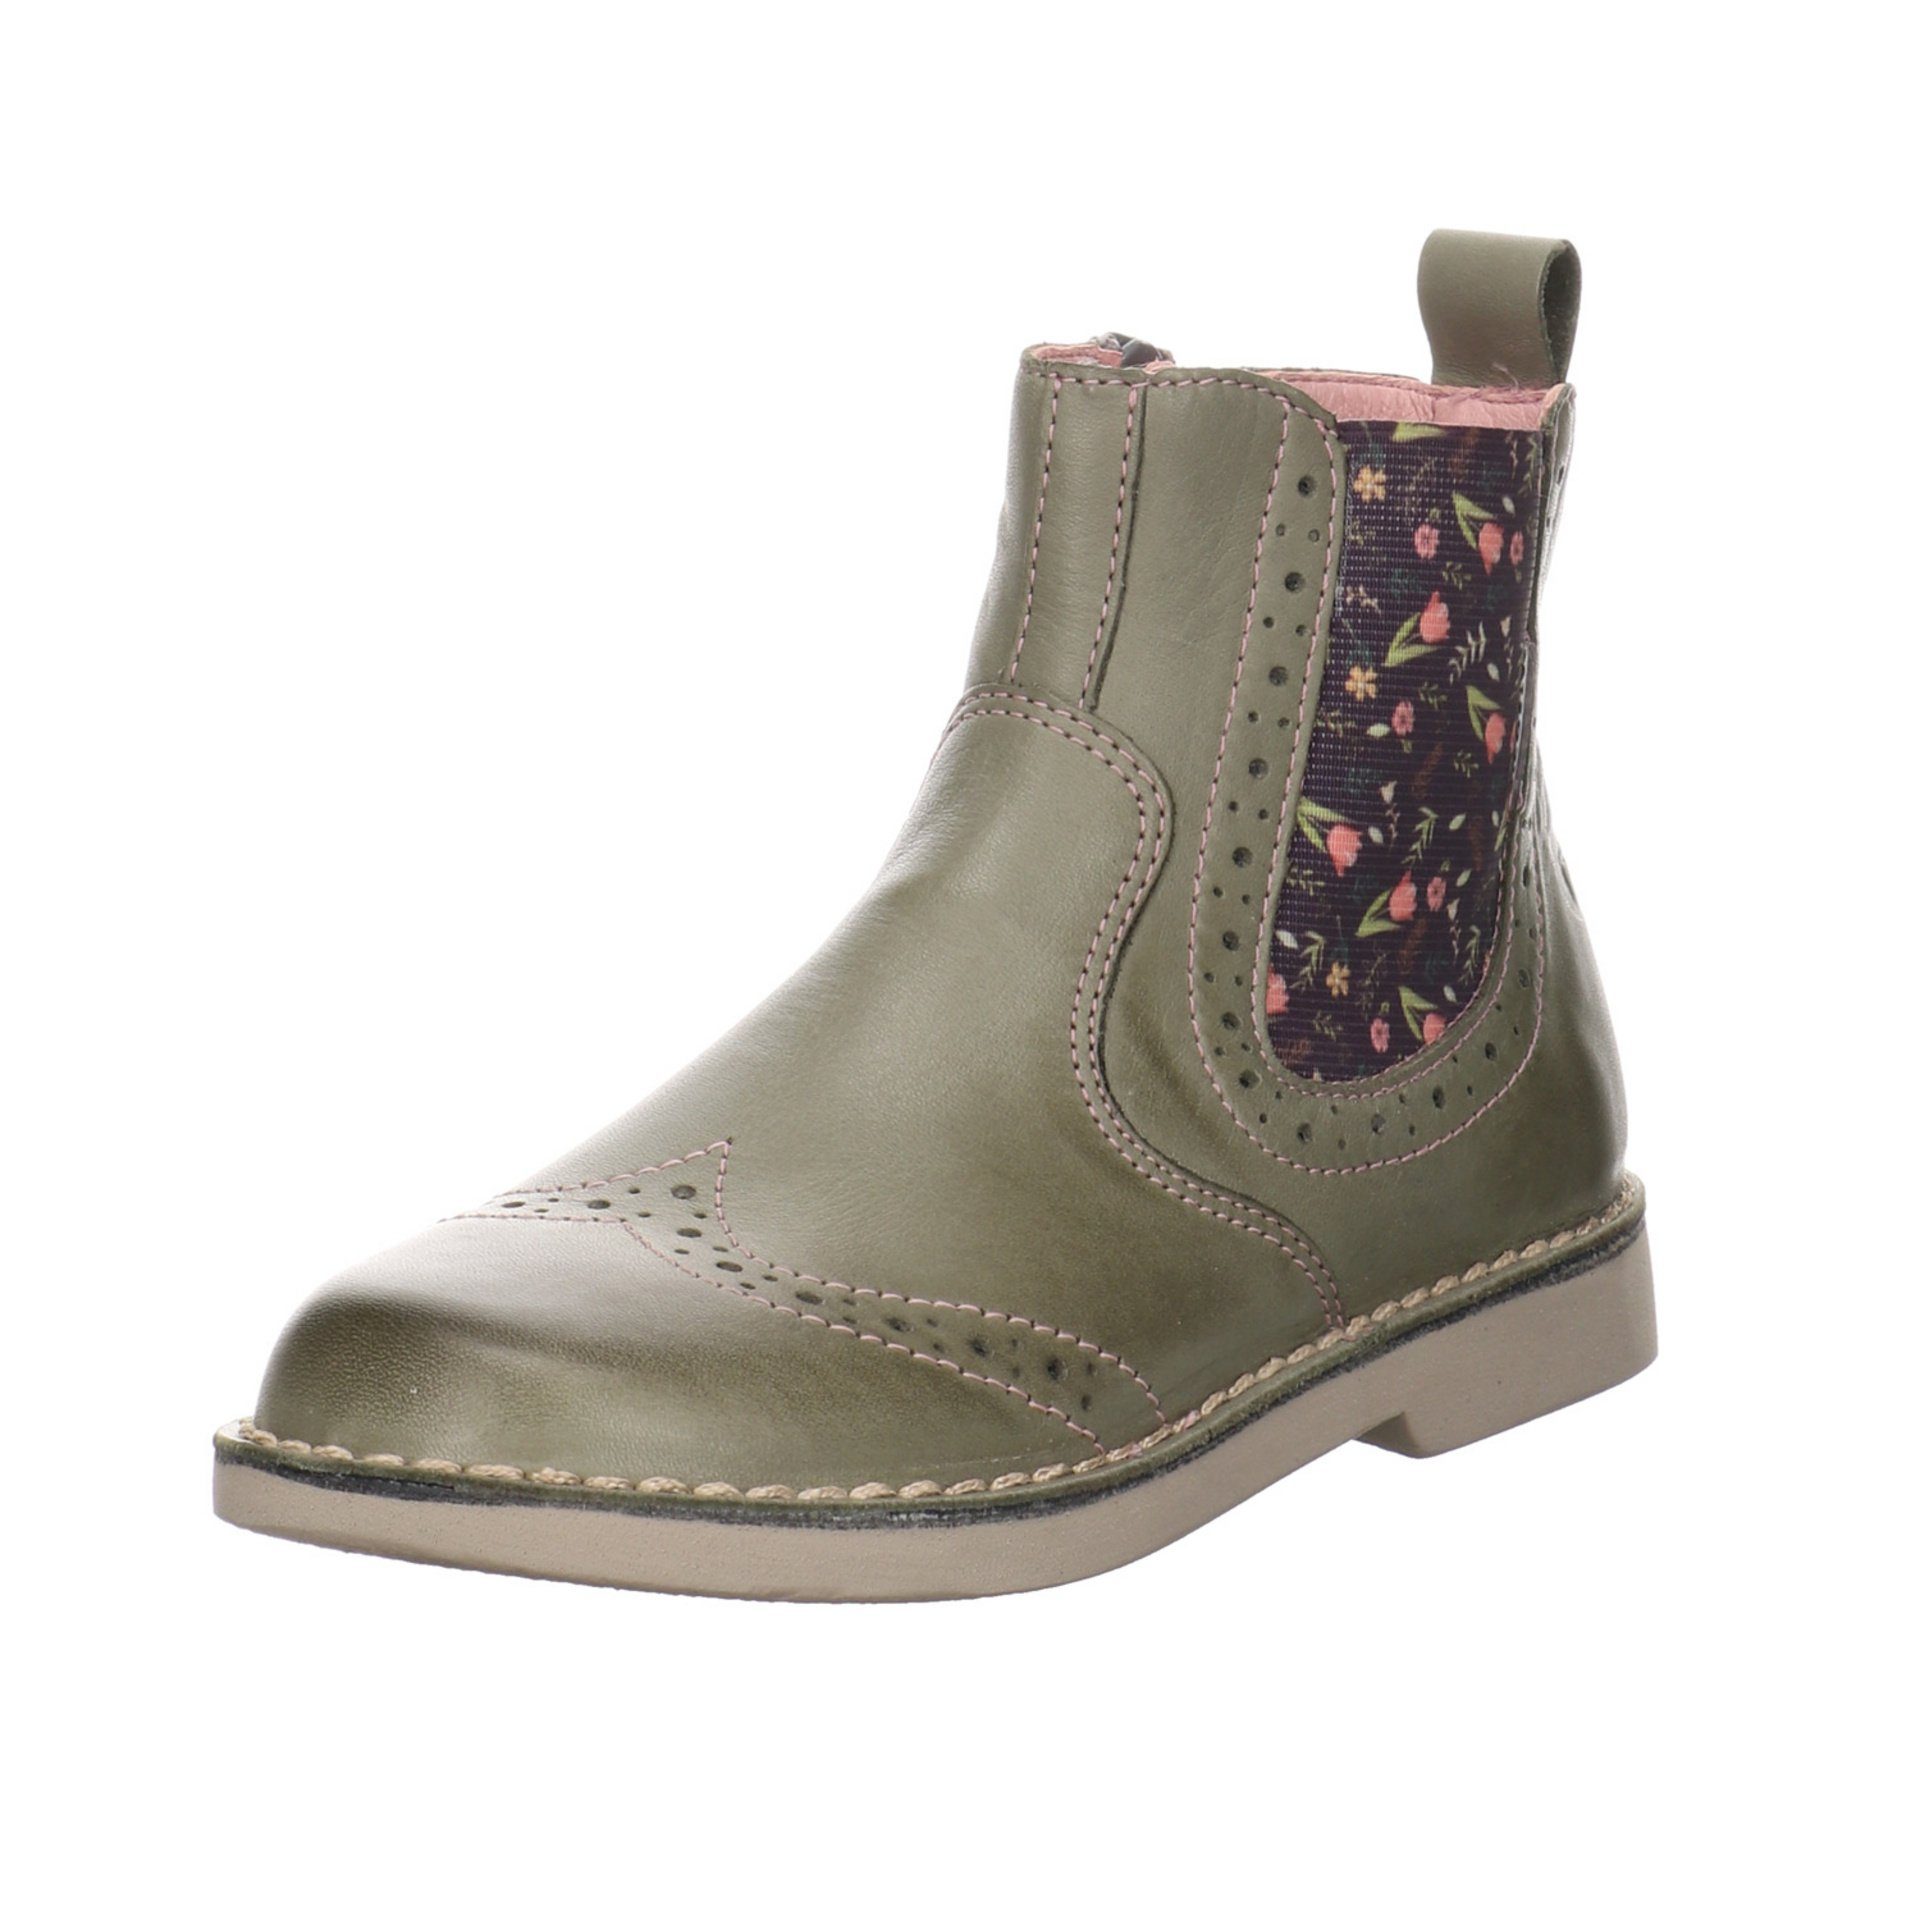 Ricosta Mädchen Boots Chelsea Glattleder Stiefelette (540) Schuhe Dallas Stiefel eukalyptus/Blume